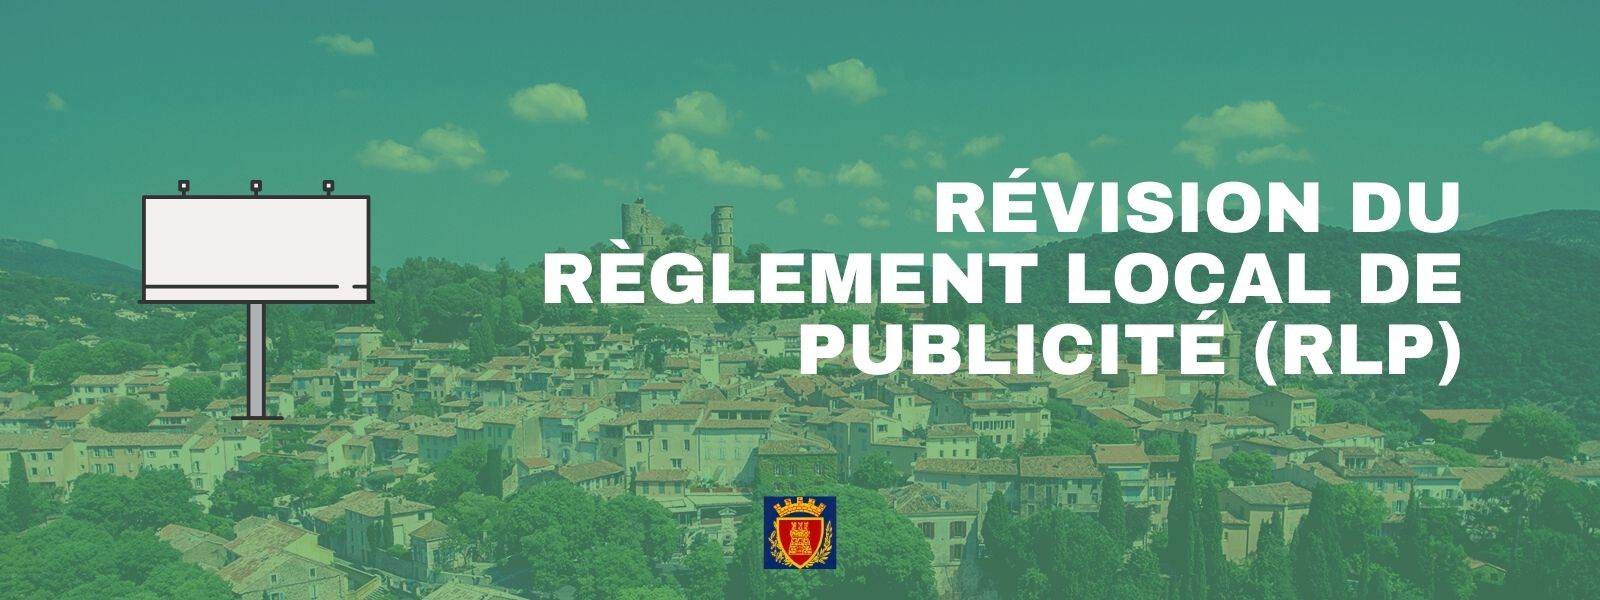 Révision du Règlement Local de Publicité (RLP)